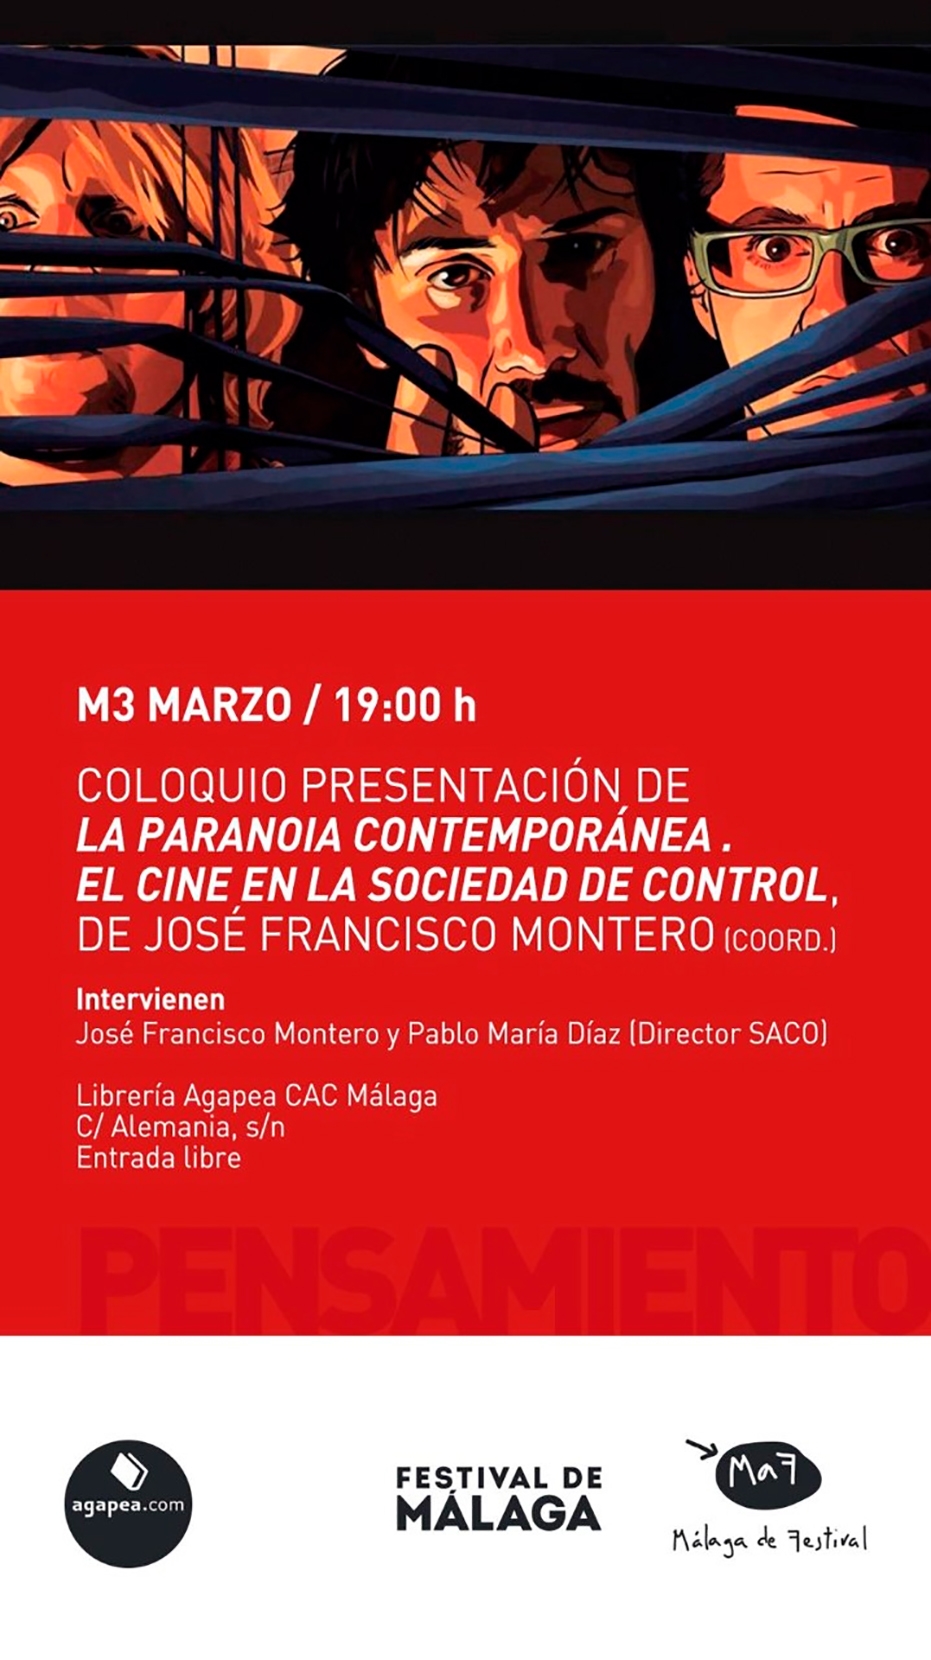 Coloquio presentación de 'La paranoia contemporánea. El cine en la sociedad de control', de José Francisco Montero (coord.)